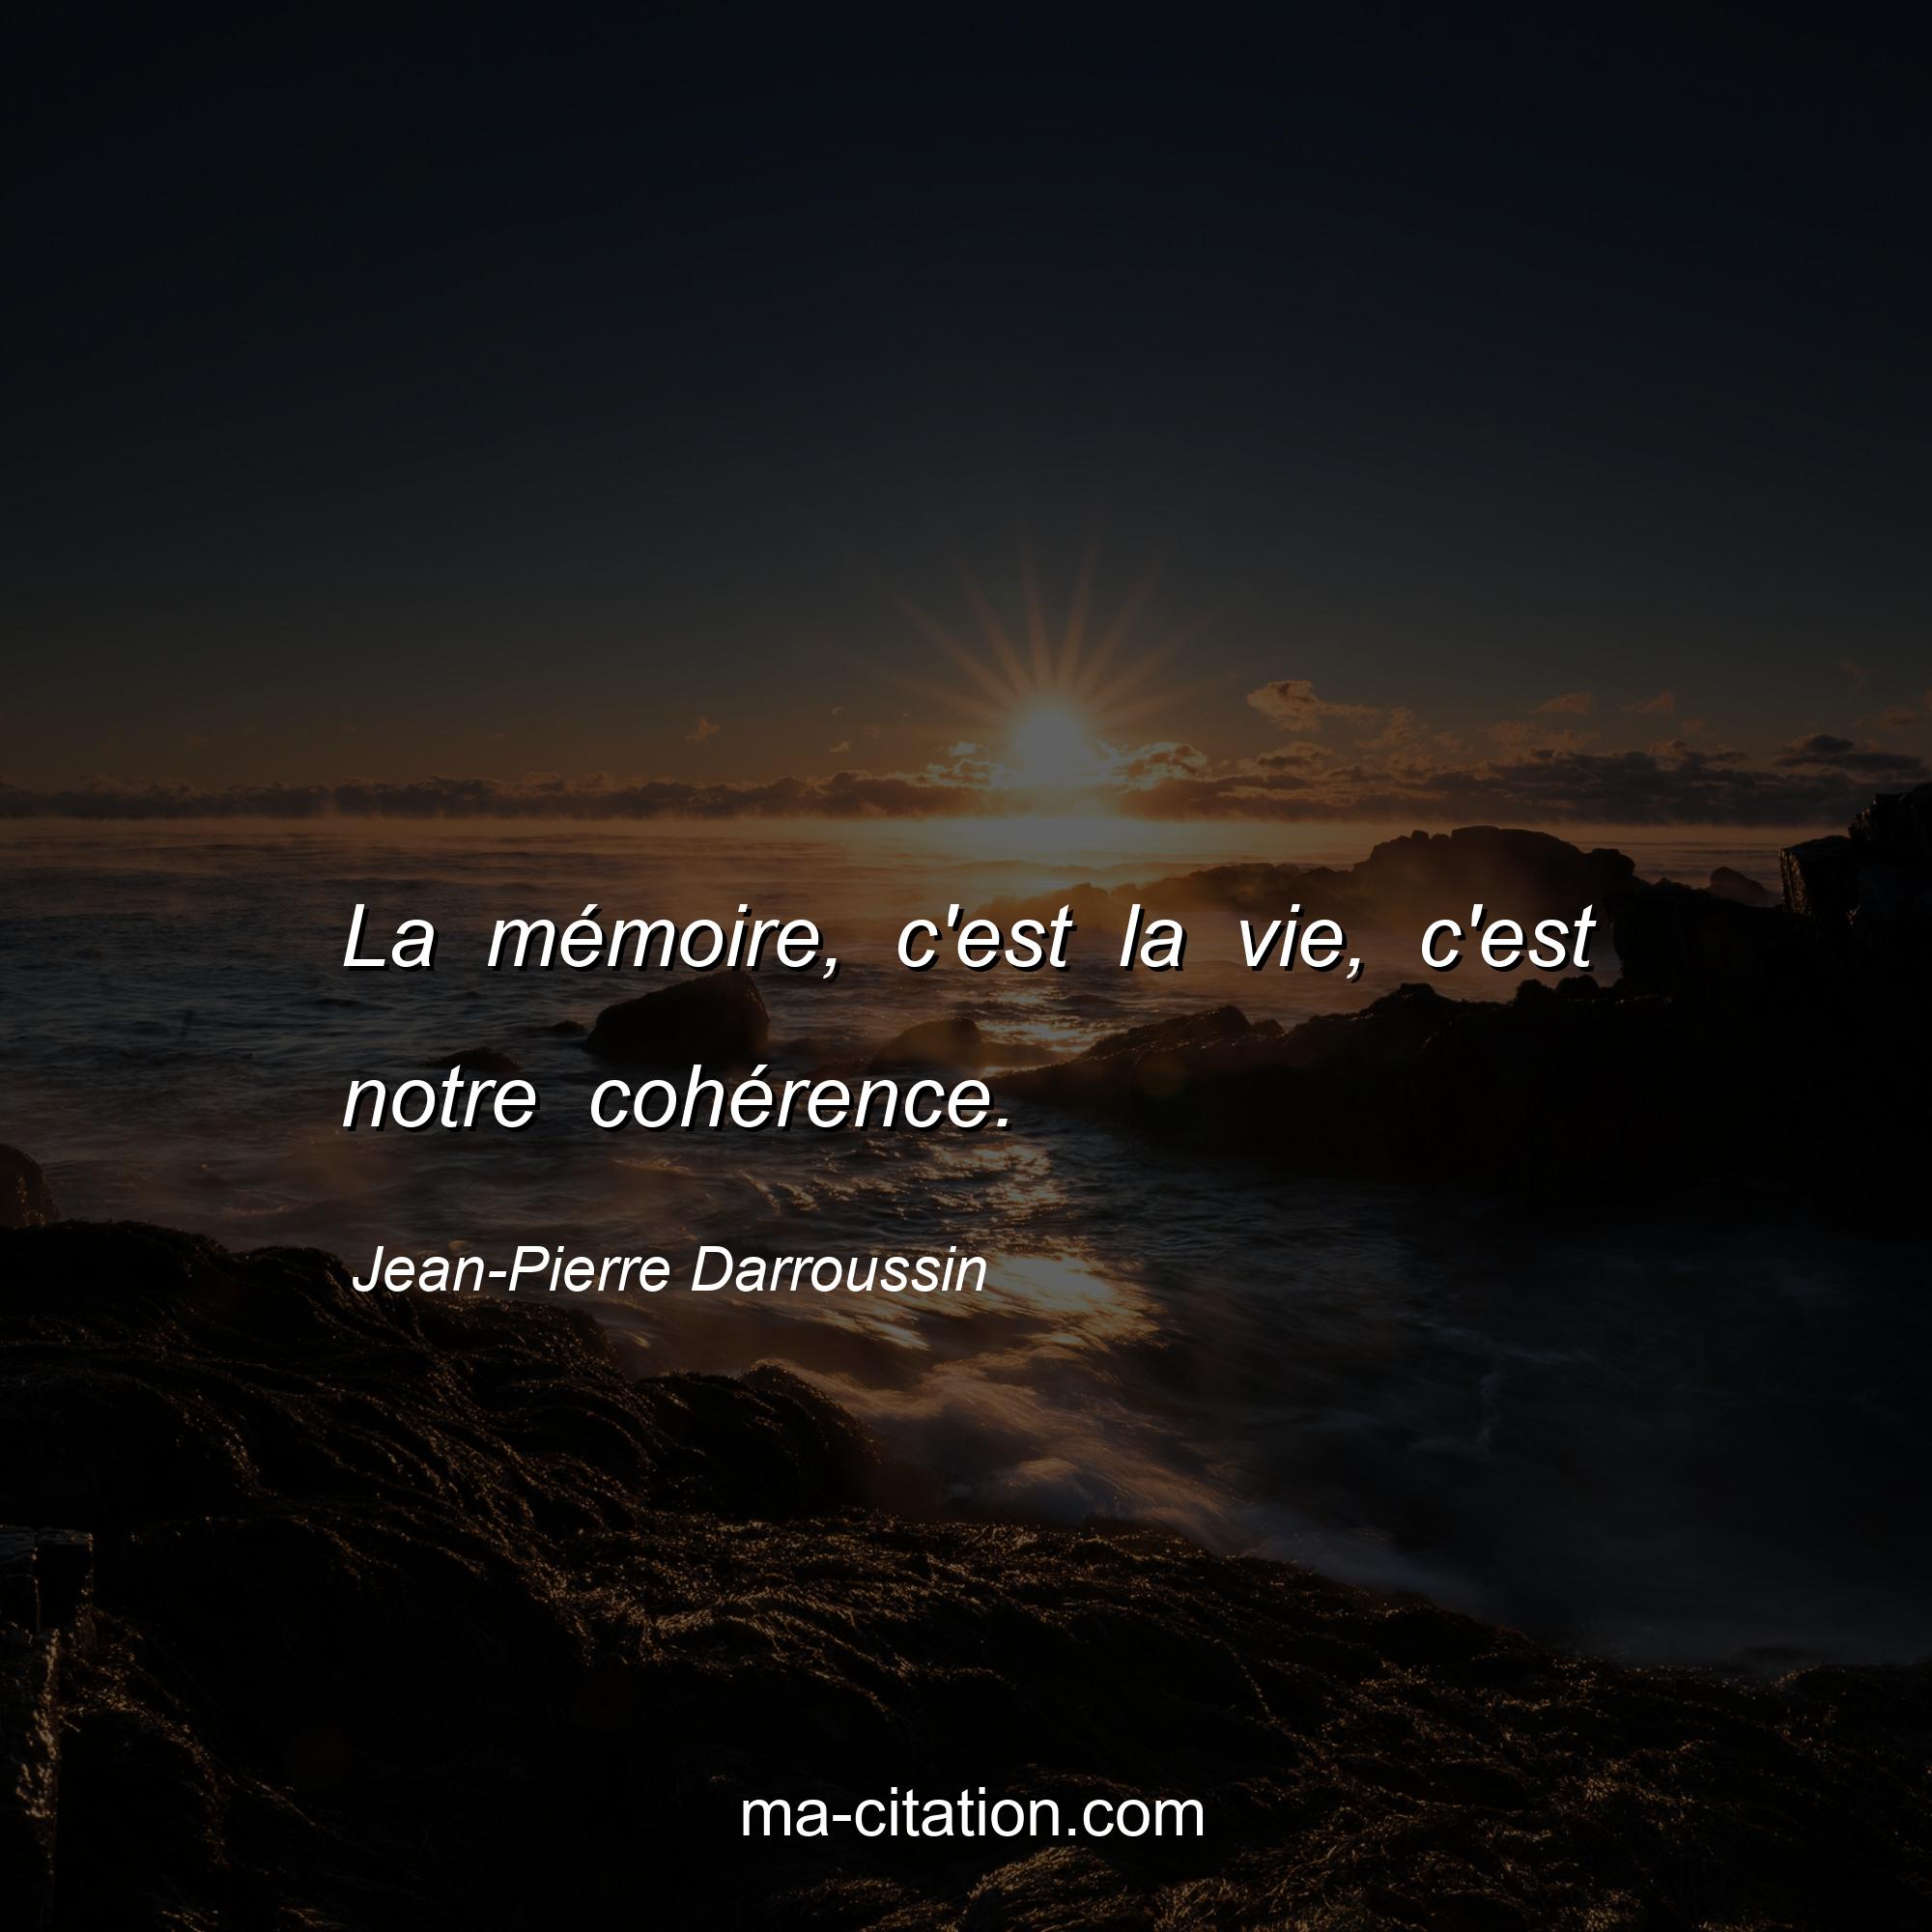 Jean-Pierre Darroussin : La mémoire, c'est la vie, c'est notre cohérence.